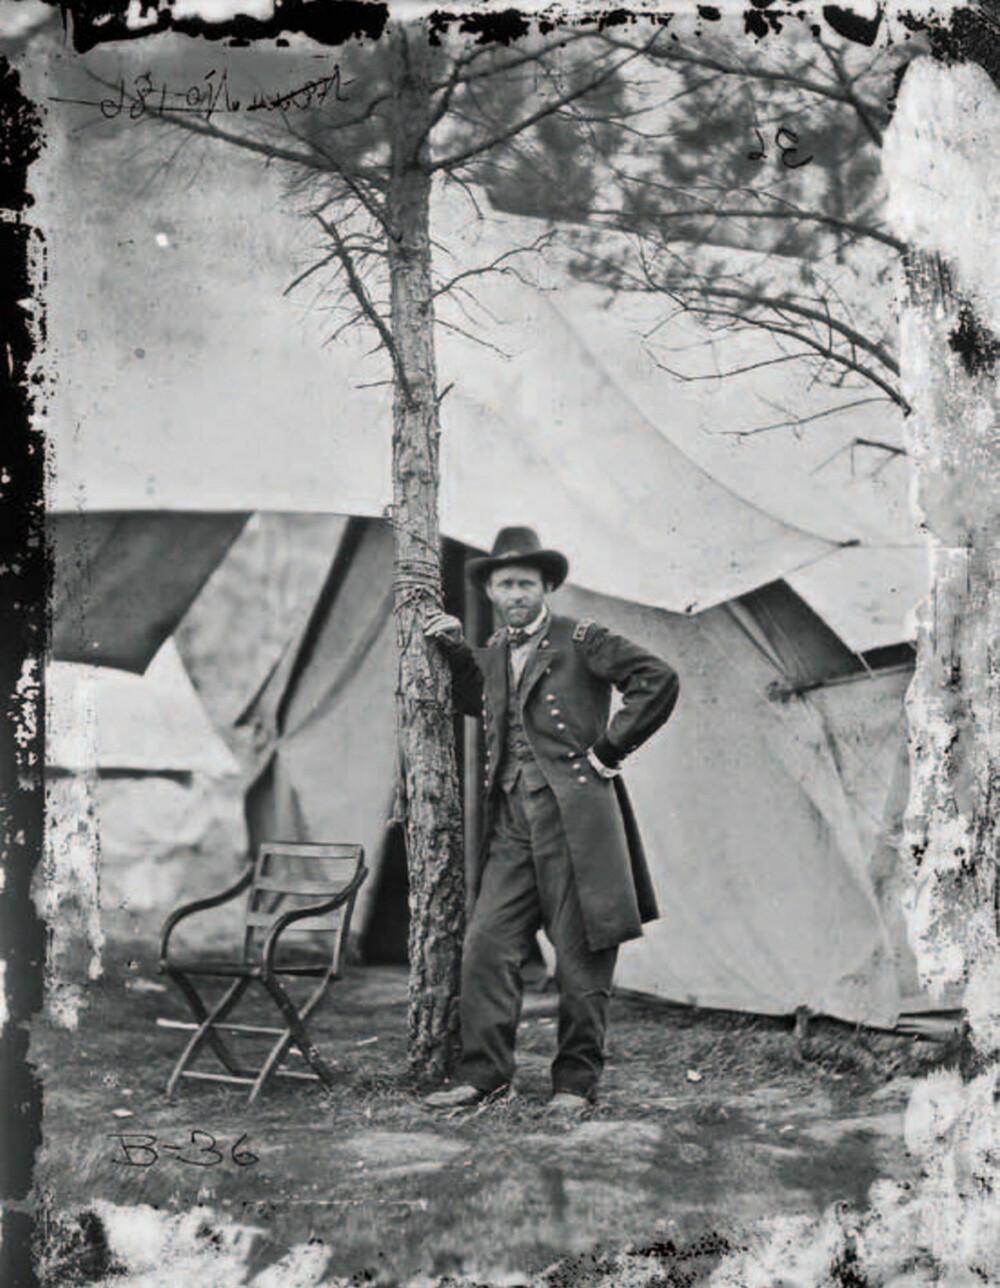 Øverstkommanderende for de føderale styrkene, general Ulysses S. Grant, portrettert i hovedkvarteret under slaget ved Cold Harbor i Virginia sommeren 1864.